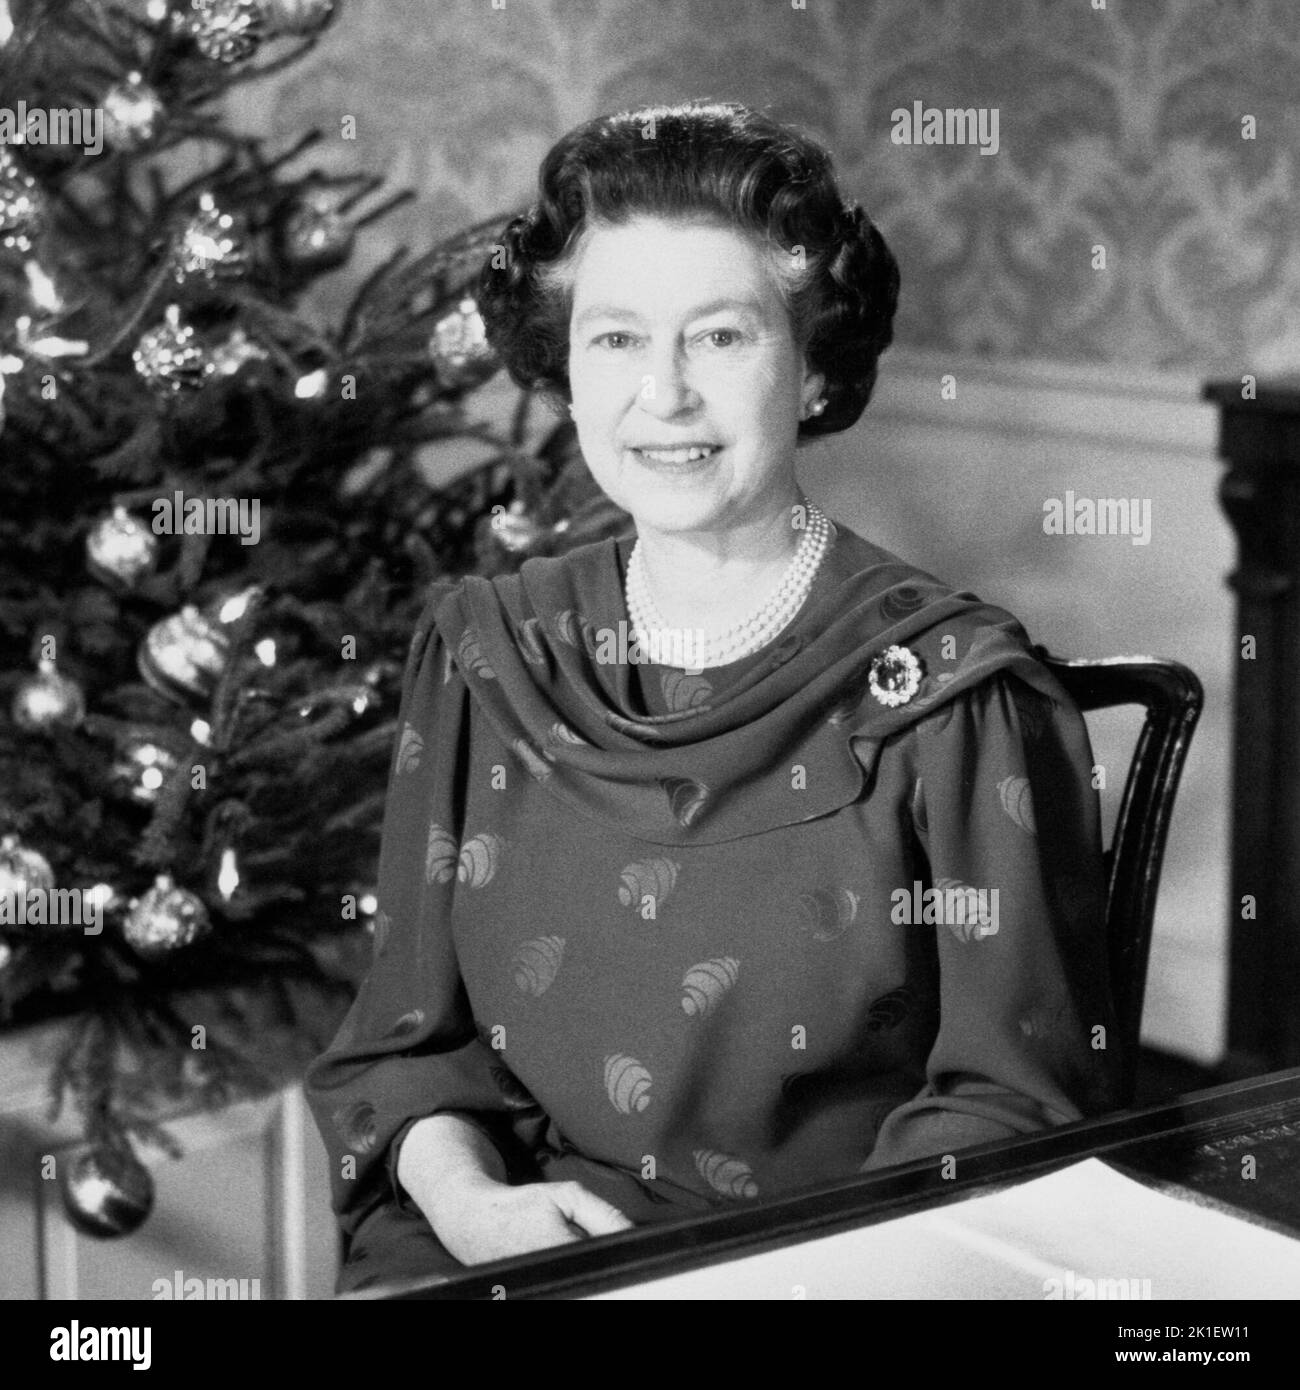 Foto del file datata 23/12/1987 della Regina rende il suo tradizionale discorso di Natale alla nazione e al Commonwealth. Data di emissione: Domenica 18 settembre 2022.. Il credito fotografico dovrebbe essere: PA Wire Foto Stock